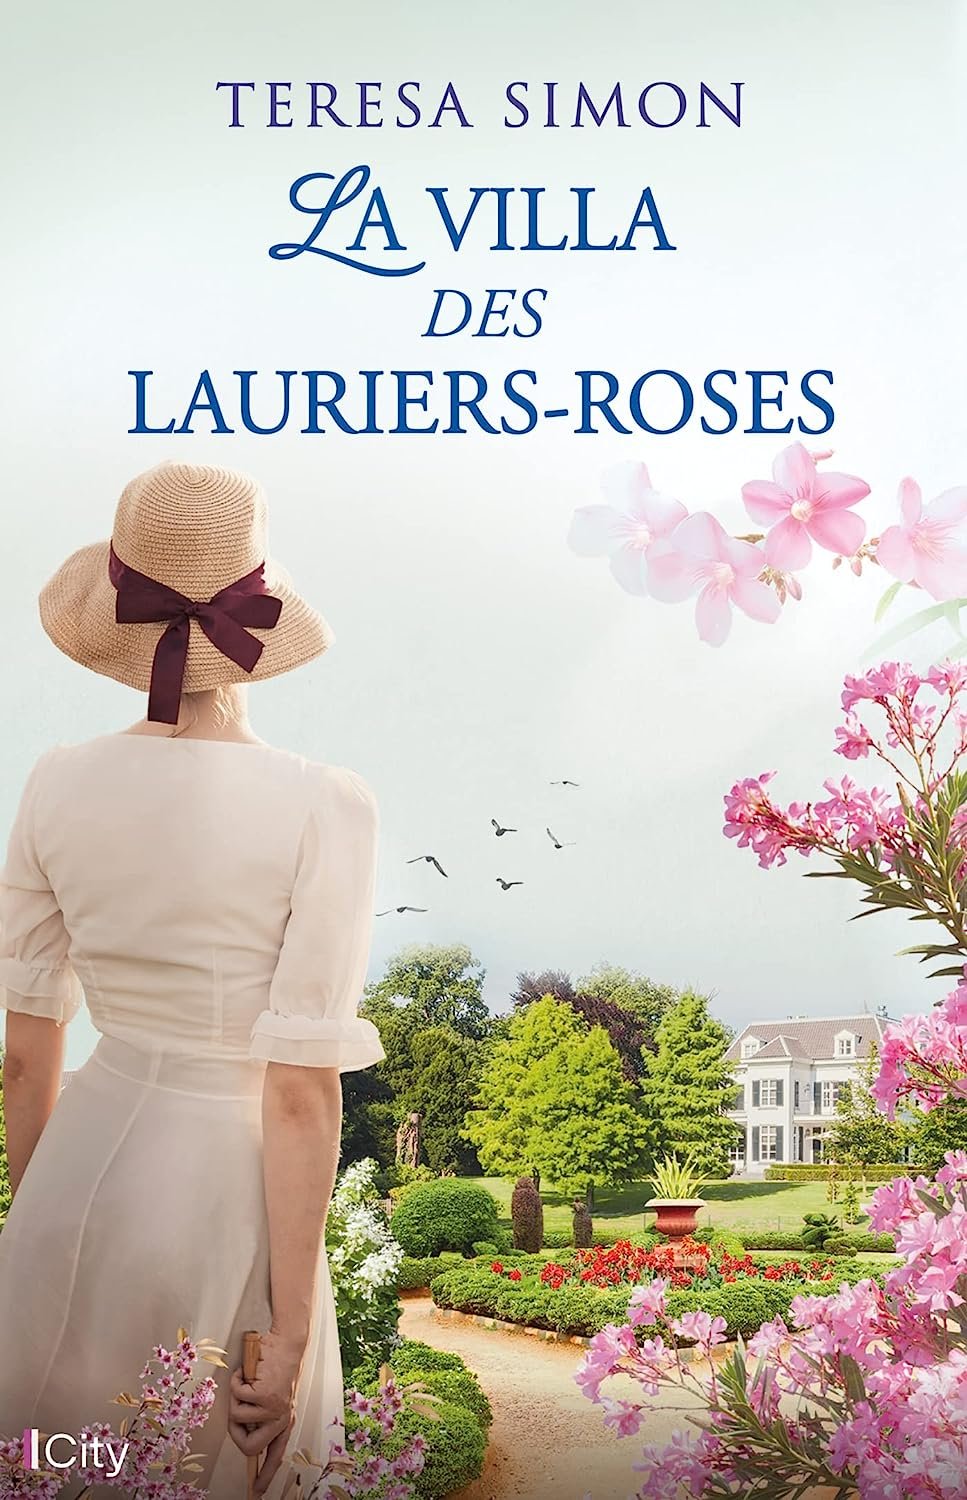 Teresa Simon - La villa des lauriers-roses